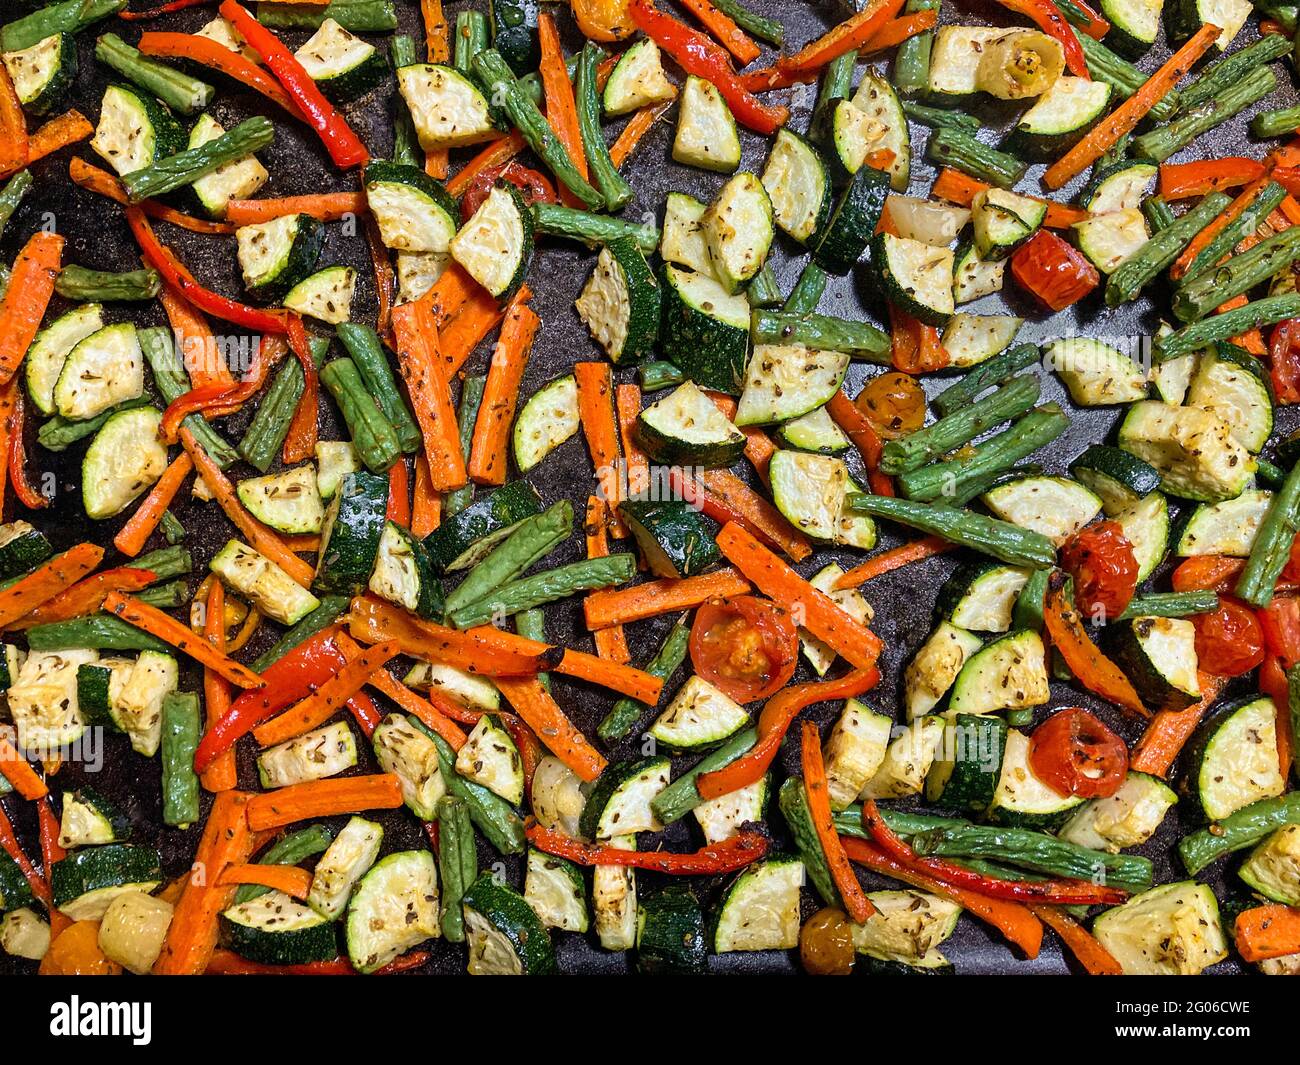 Dettaglio di una varietà di verdure cotte Foto Stock